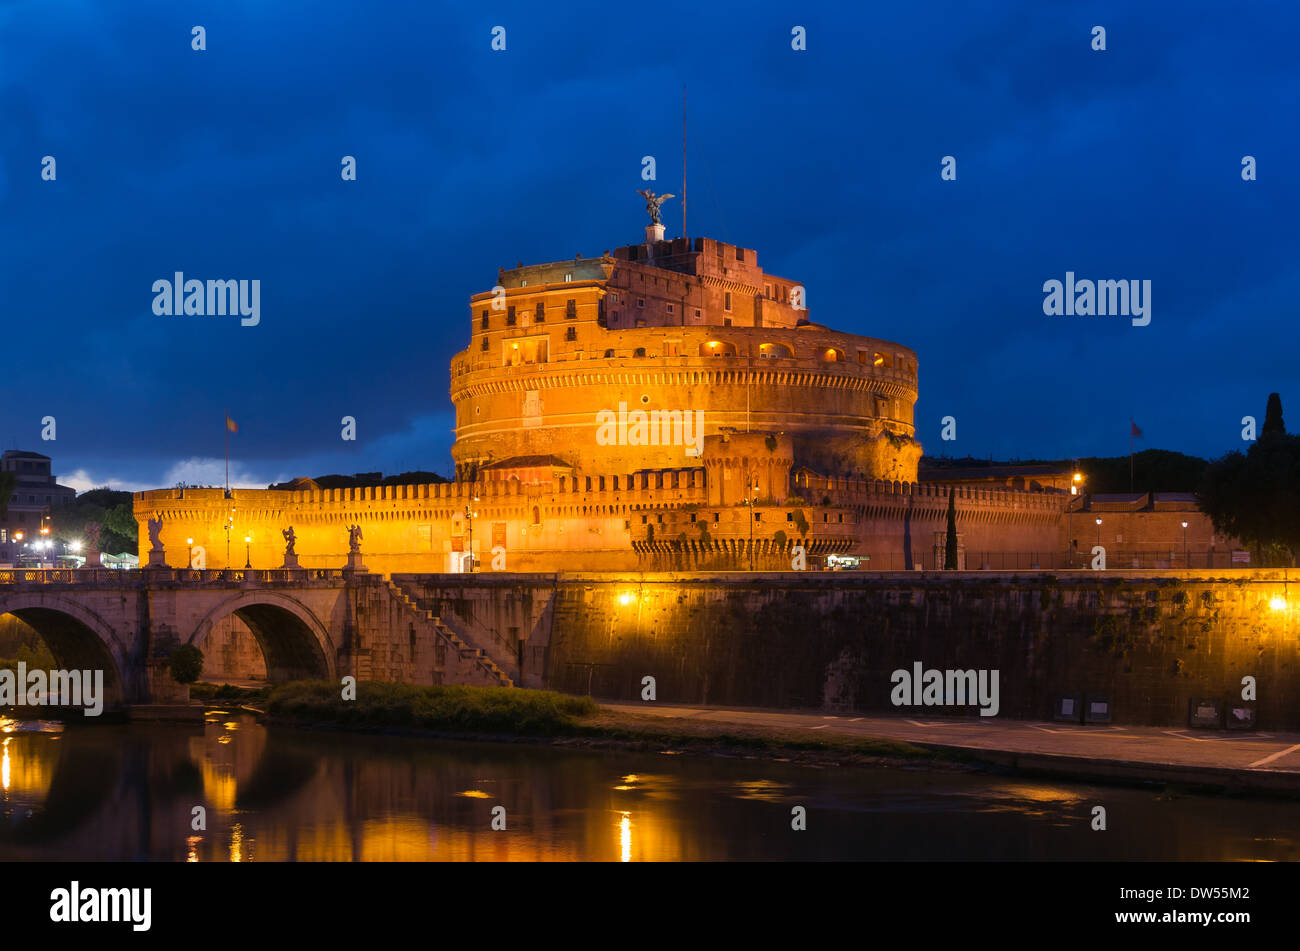 Castel Sant'Angelo at dusk, Rome, Italy. Stock Photo